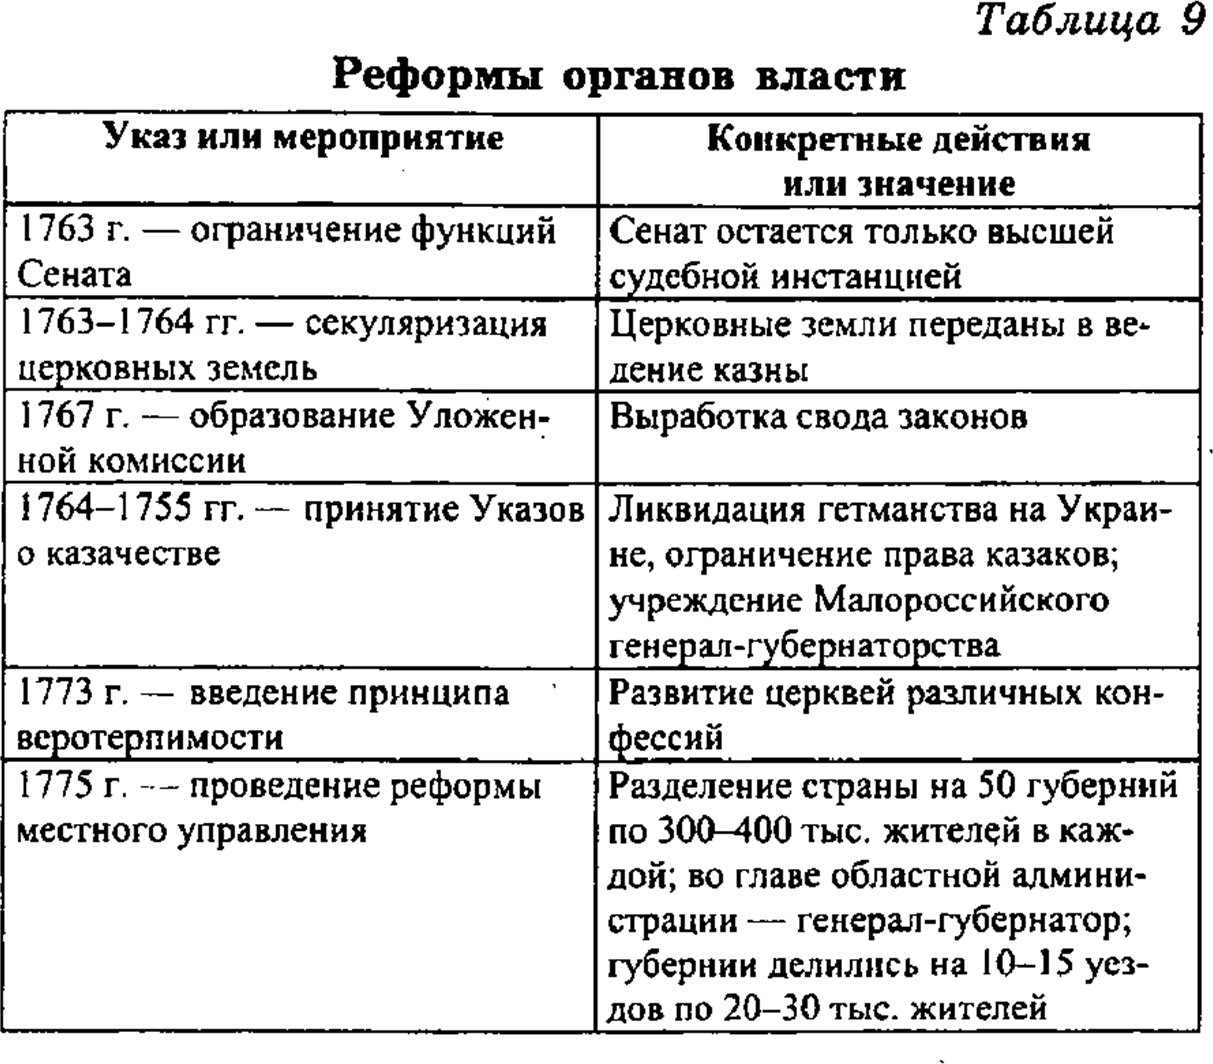 Реформы екатерины второй таблица. Реформы Екатерины 2 таблица. 801-1811 Гг. реформы таблица.